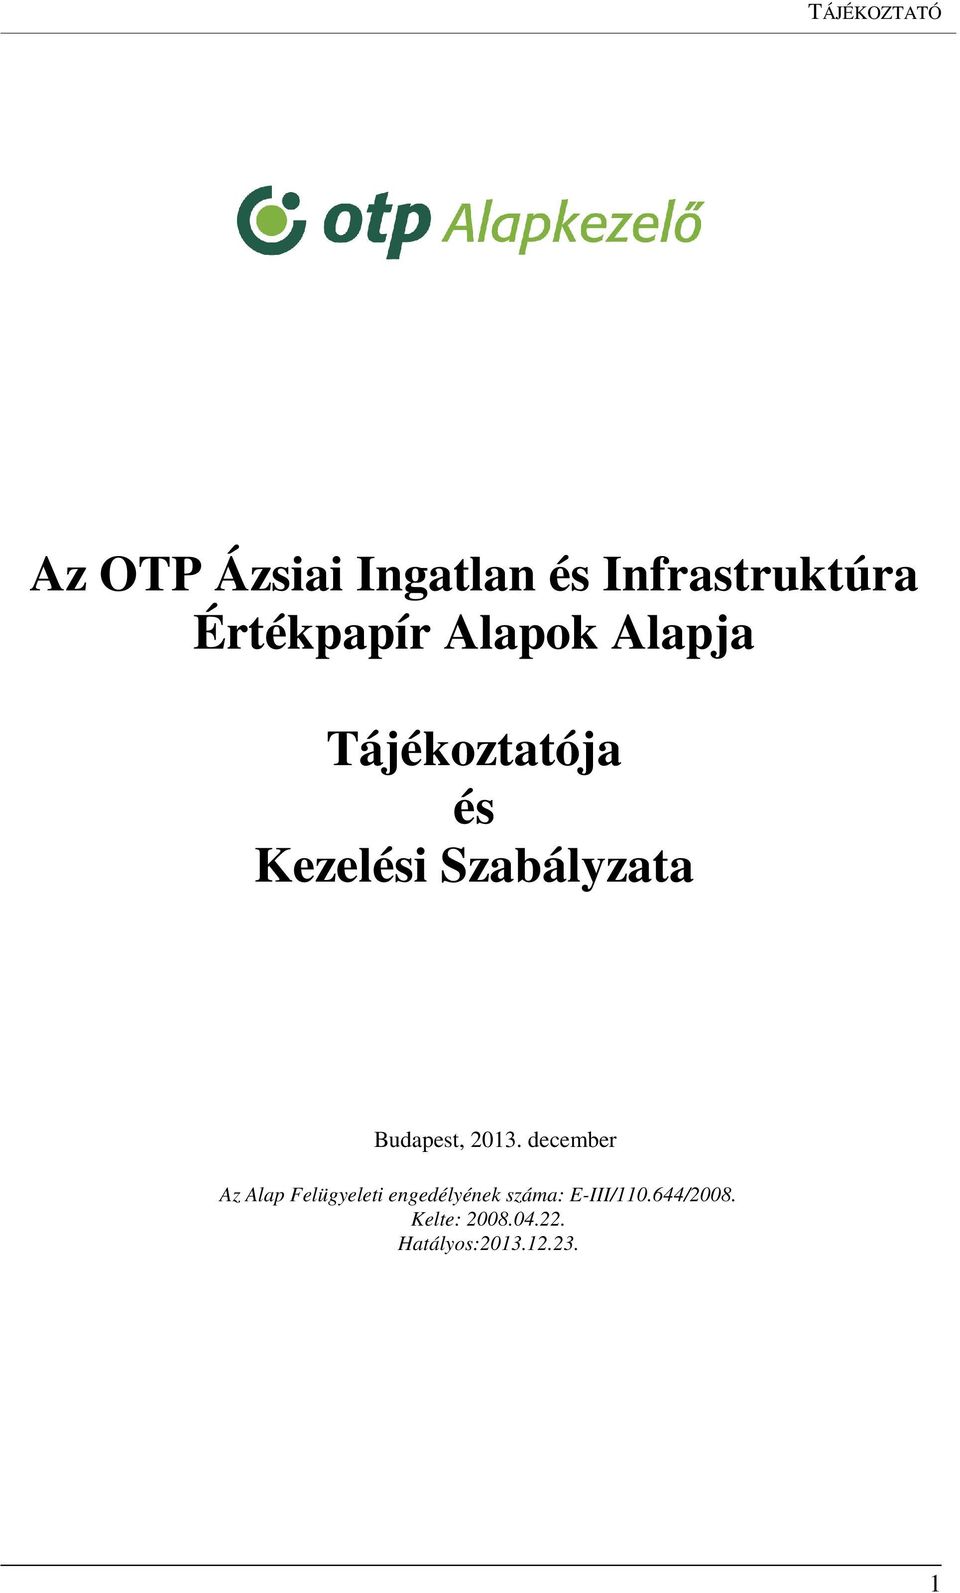 Az OTP Ázsiai Ingatlan és Infrastruktúra Értékpapír Alapok Alapja.  Tájékoztatója és Kezelési Szabályzata - PDF Ingyenes letöltés